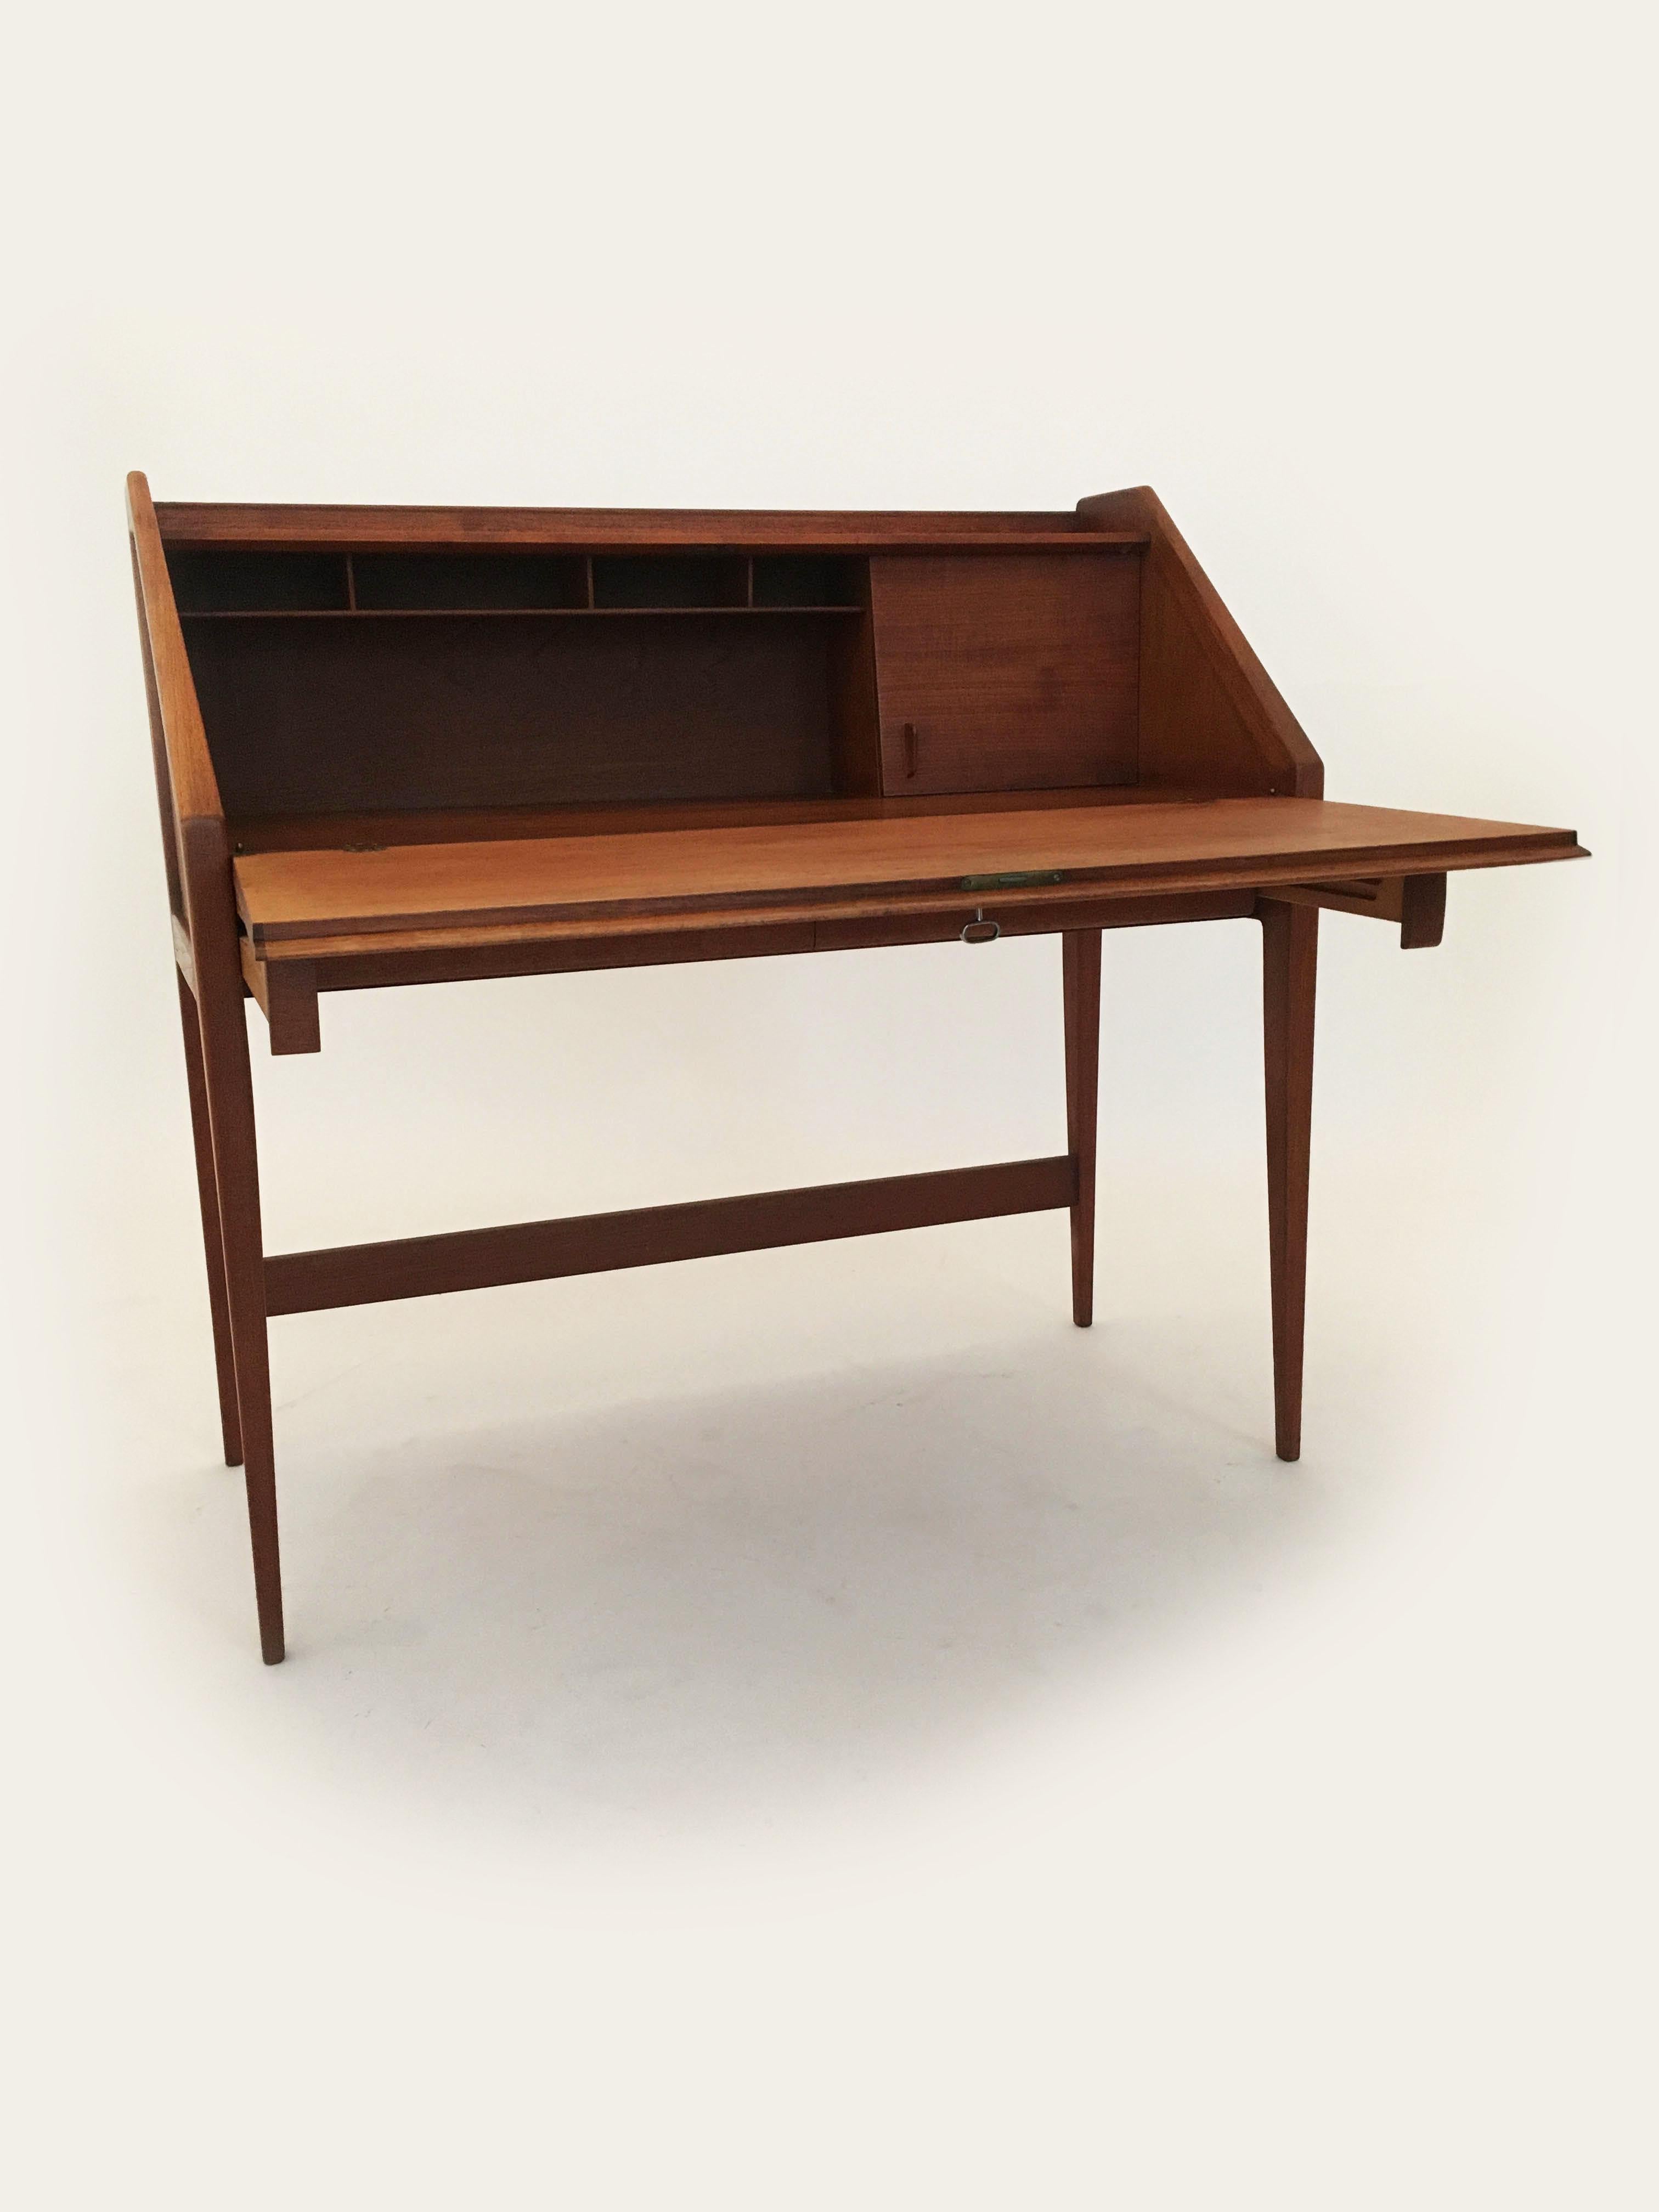 Wood Walter Wirtz for Wilhem Renz Secretary Bureau Desk Teak, Germany, 1960s For Sale